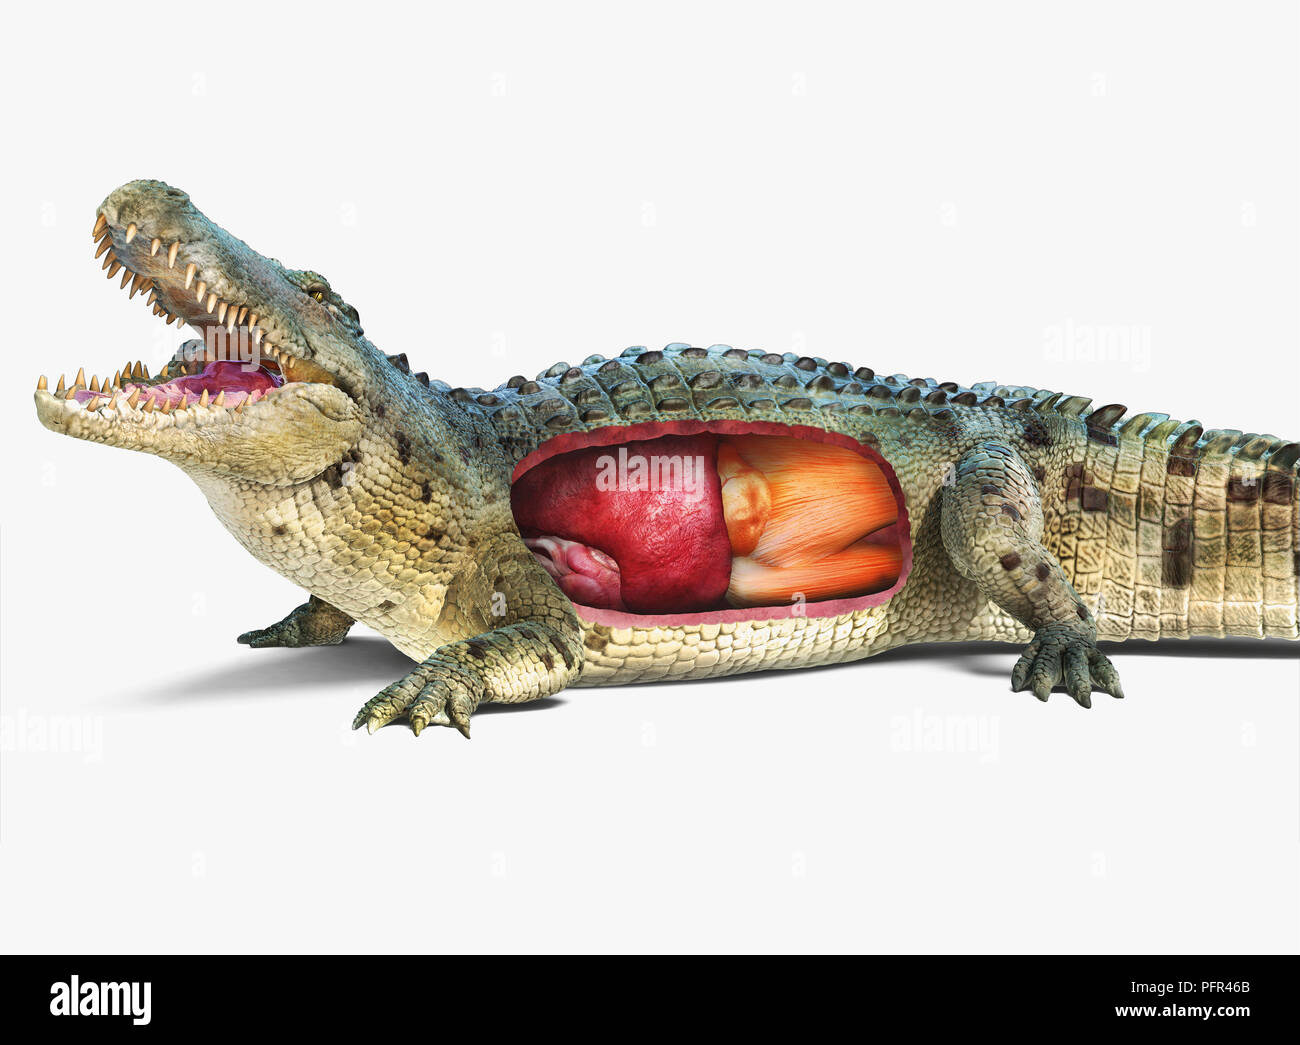 Illustrazione Digitale del coccodrillo di acqua salata con organi interni che mostra, spaccato Foto Stock